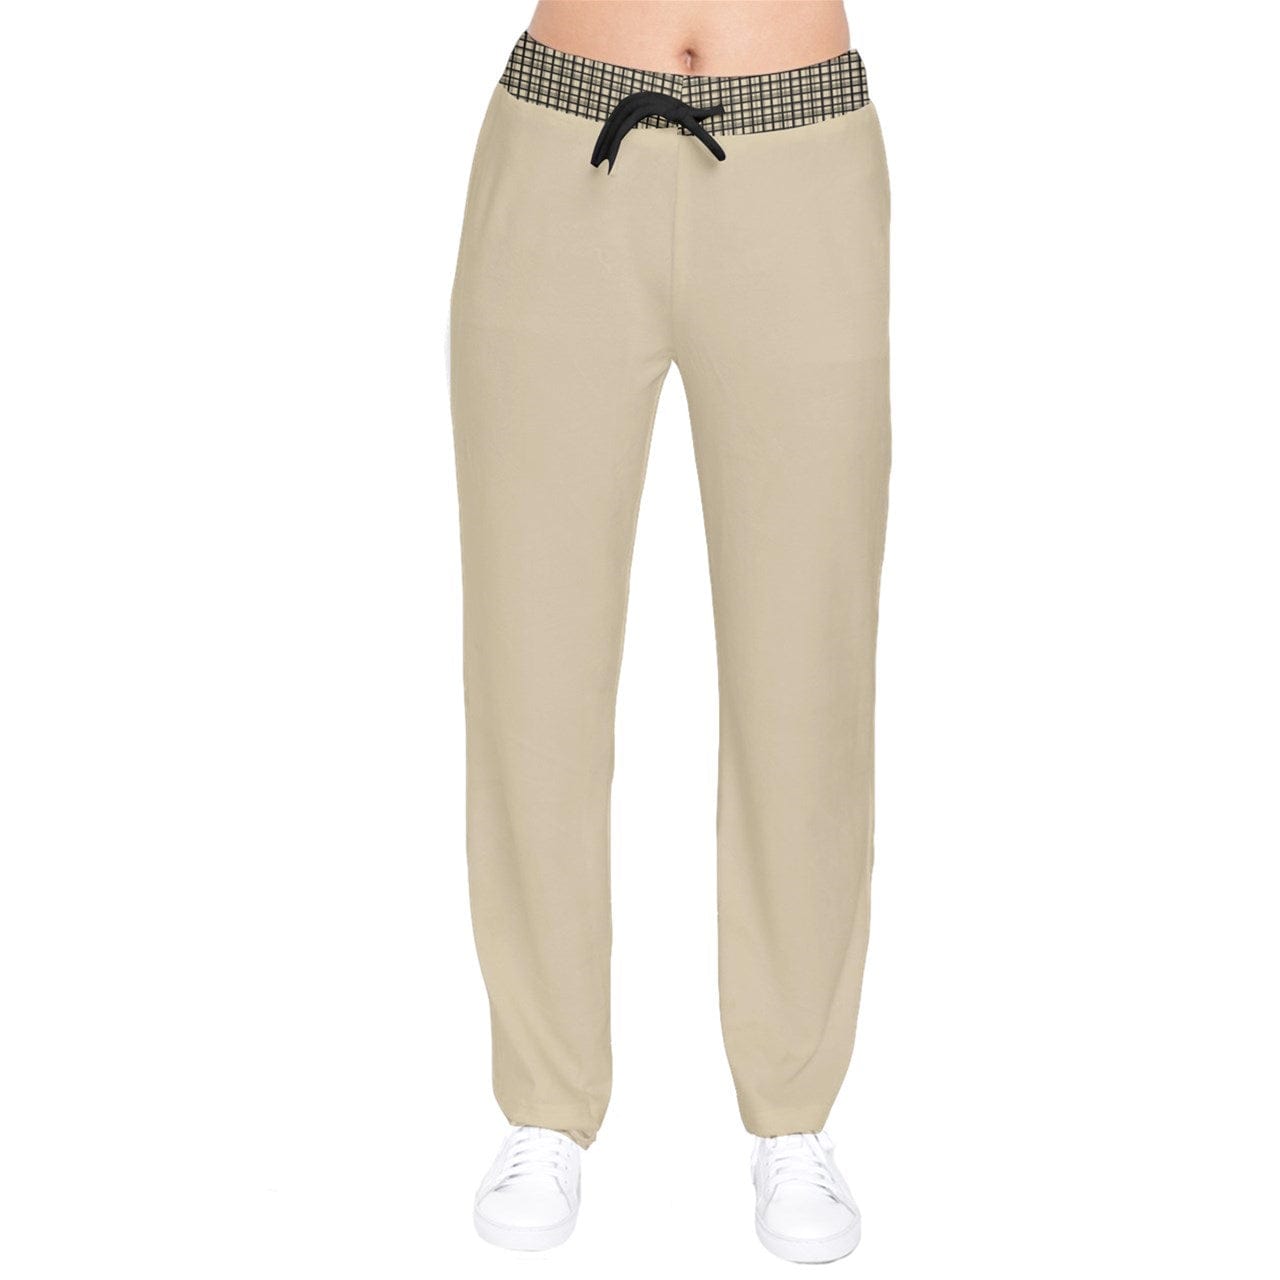 the-wheaten-store-women-velvet-drawstring-pants-beige-pants-32950641983685